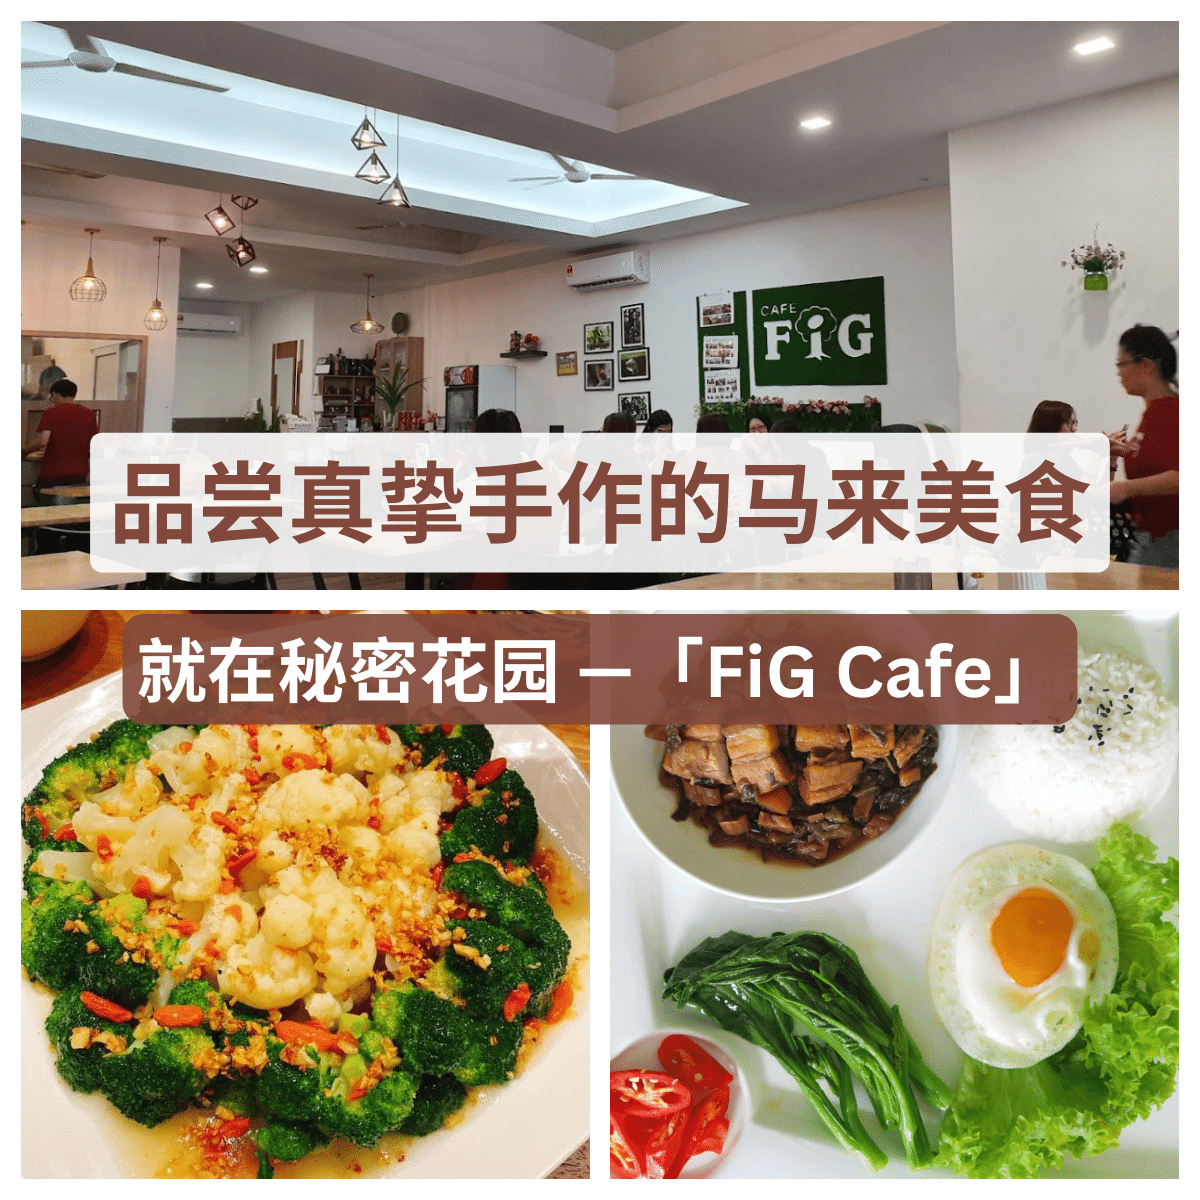 “经典马来西亚风味：百合花园深处「 FiG Cafe 」的绝妙之选。”